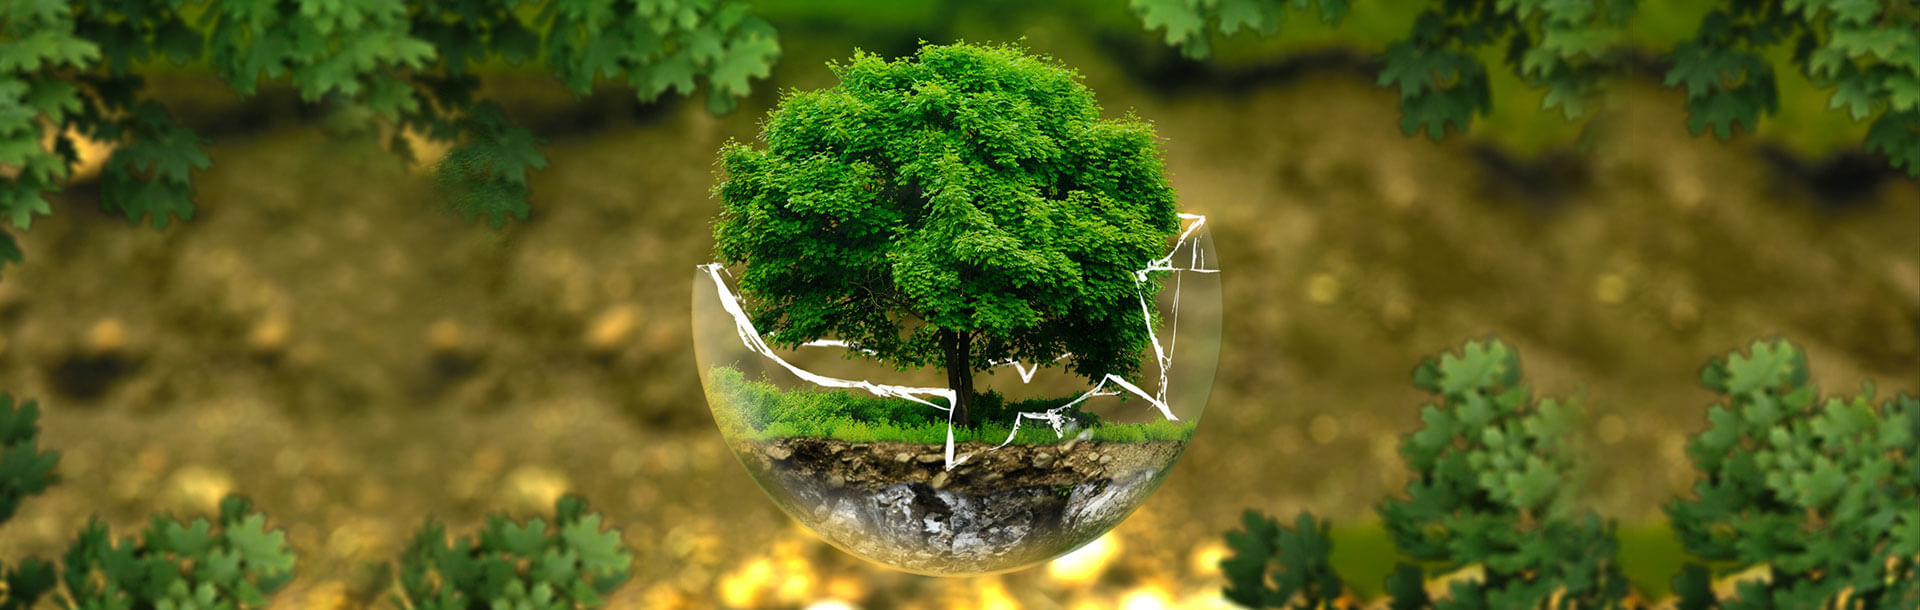 Како да бидеме eco-friendly и свесни за животната средина?